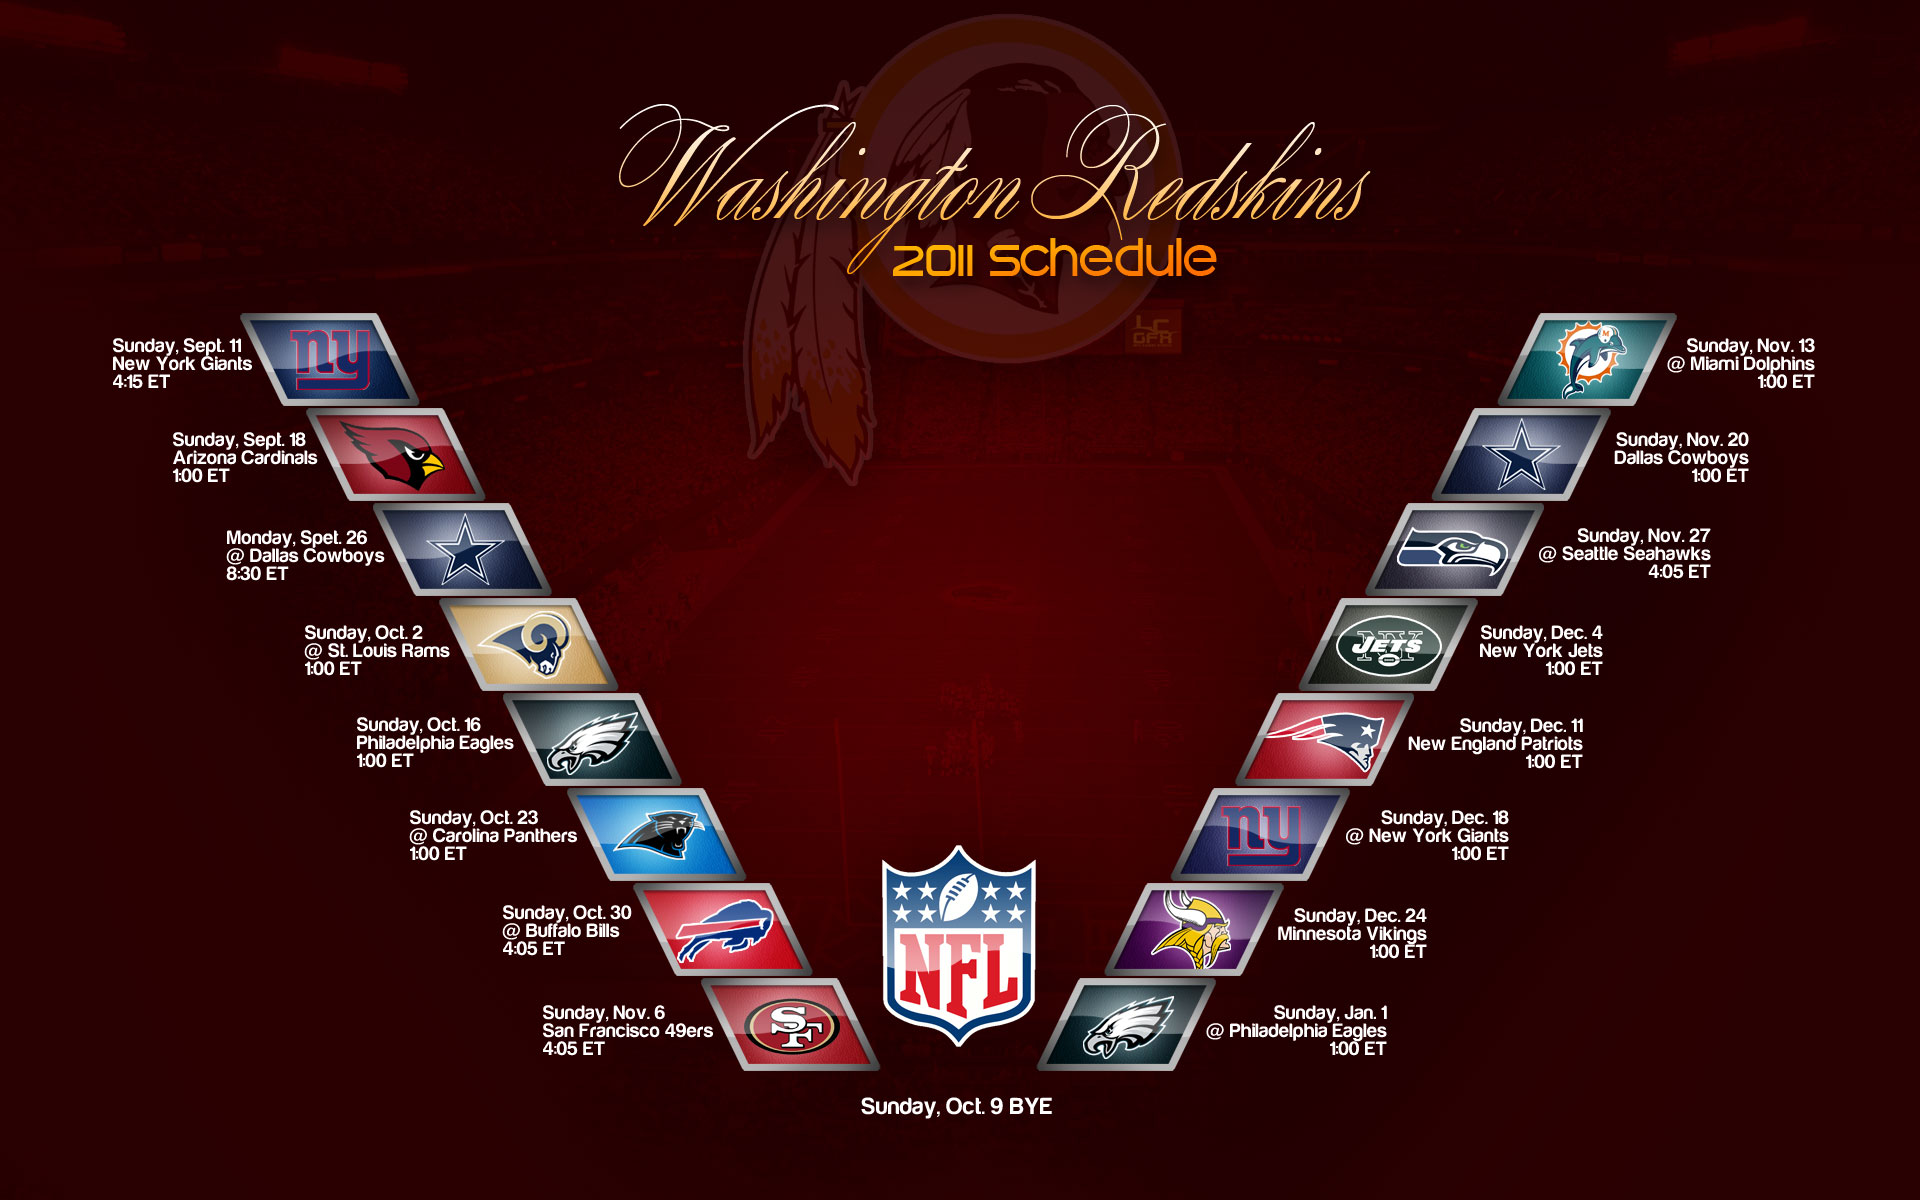 Washington Redskins Wallpaper Image